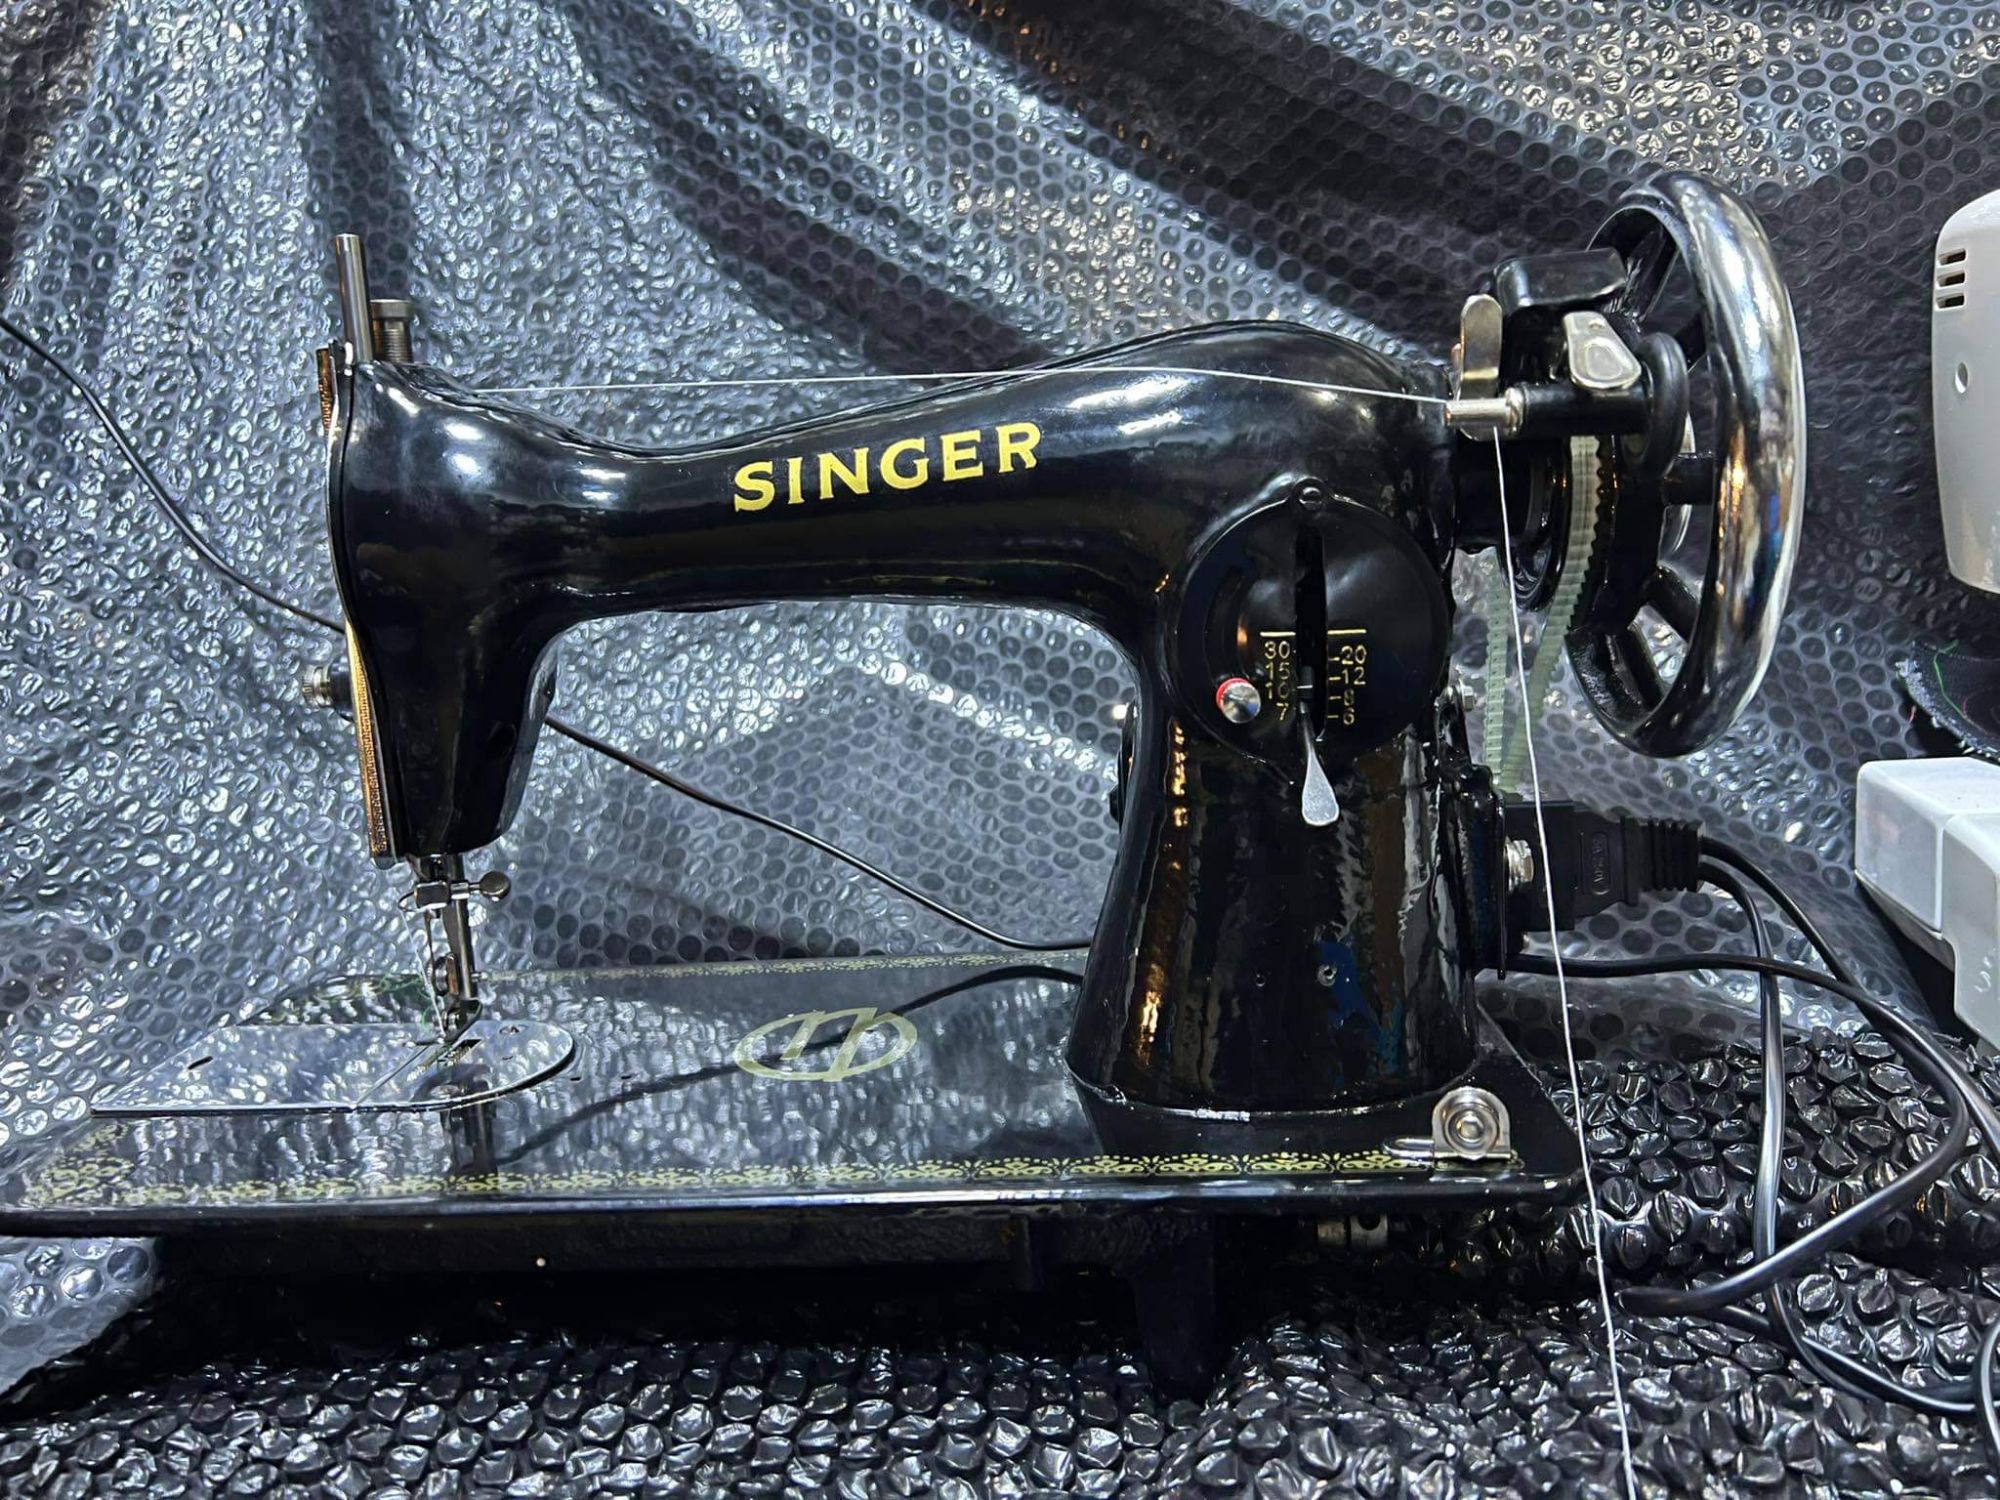 SINGER MANUAL SEWING MACHINE